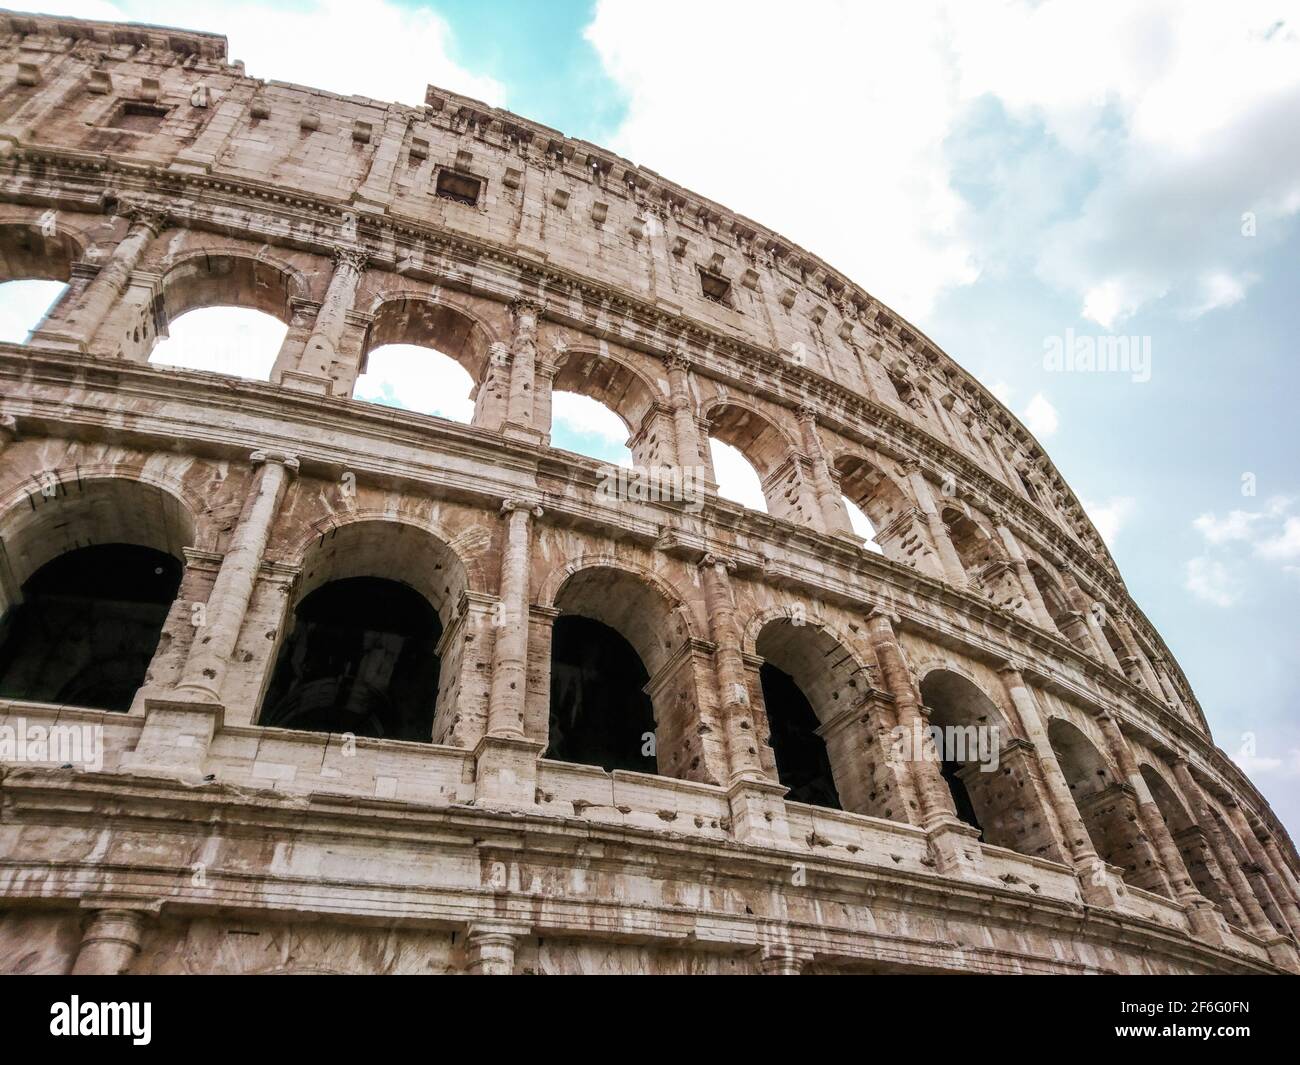 Arches de marbre ruines du Colisée à l'extérieur de la partie supérieure vue épique. Célèbre amphithéâtre romain monumental à 3 niveaux, arène de jeux gladiateurs au centre Banque D'Images